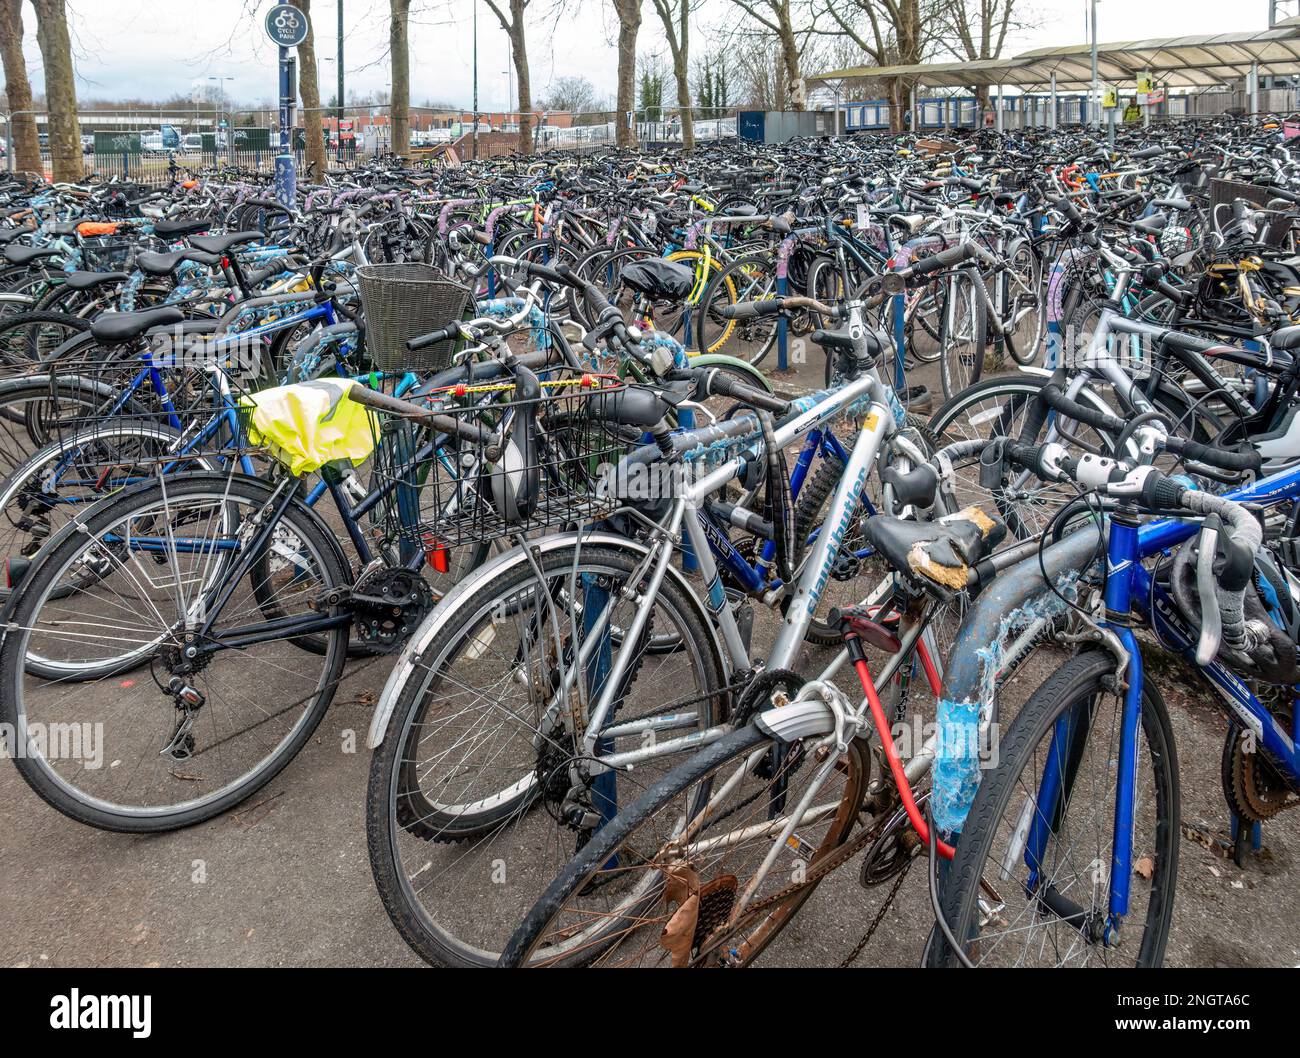 OXFORD, ENGLAND - FEBRUAR 18 2023: Fahrräder in Regalen, umweltfreundlicher Nahverkehr. Stockfoto